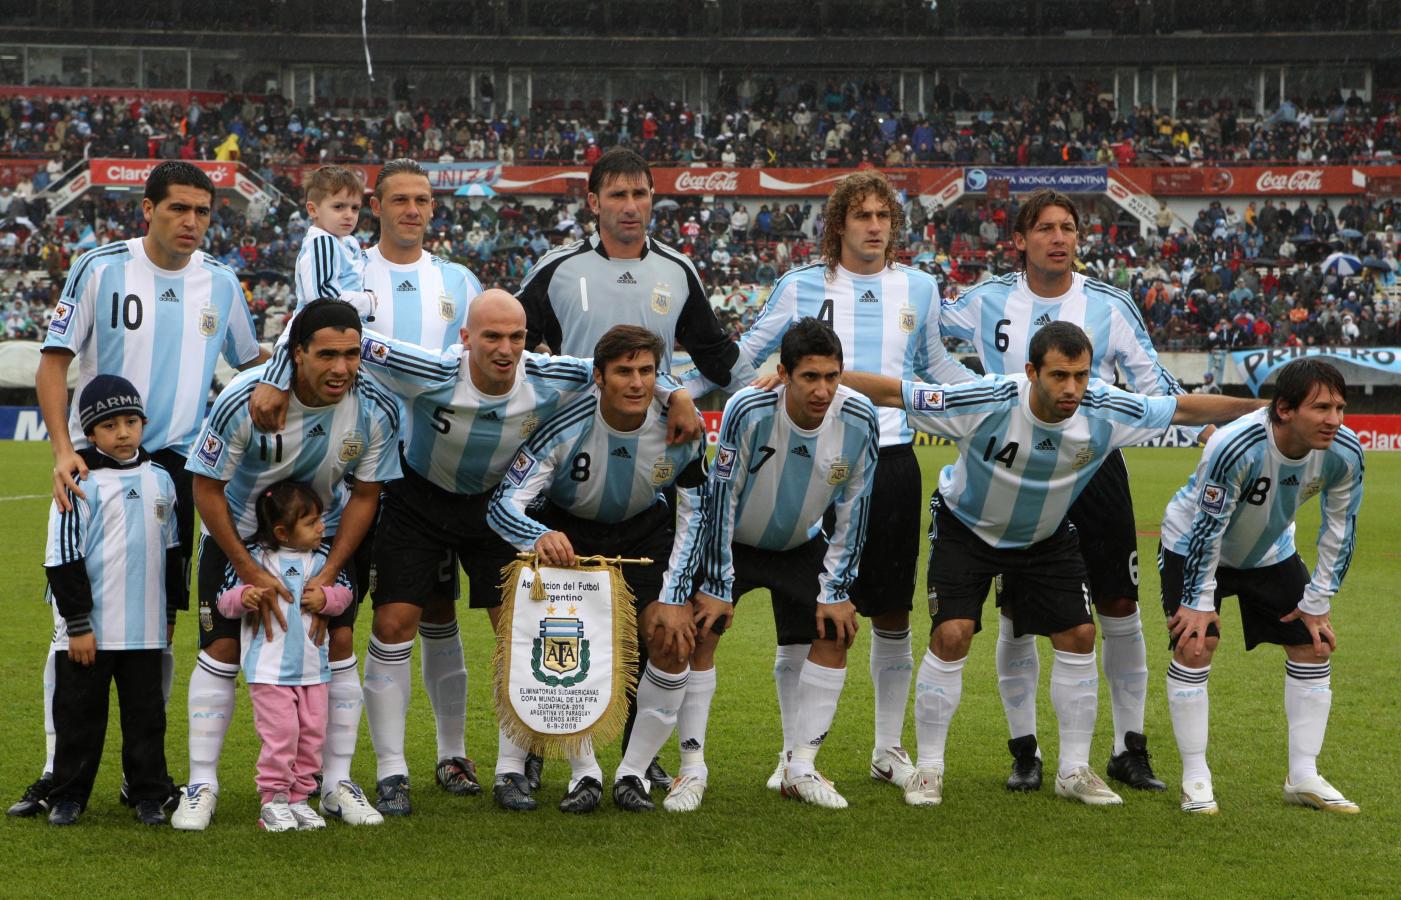 Imagen Argentina 2008, el debut de Di María. Fotobaires.